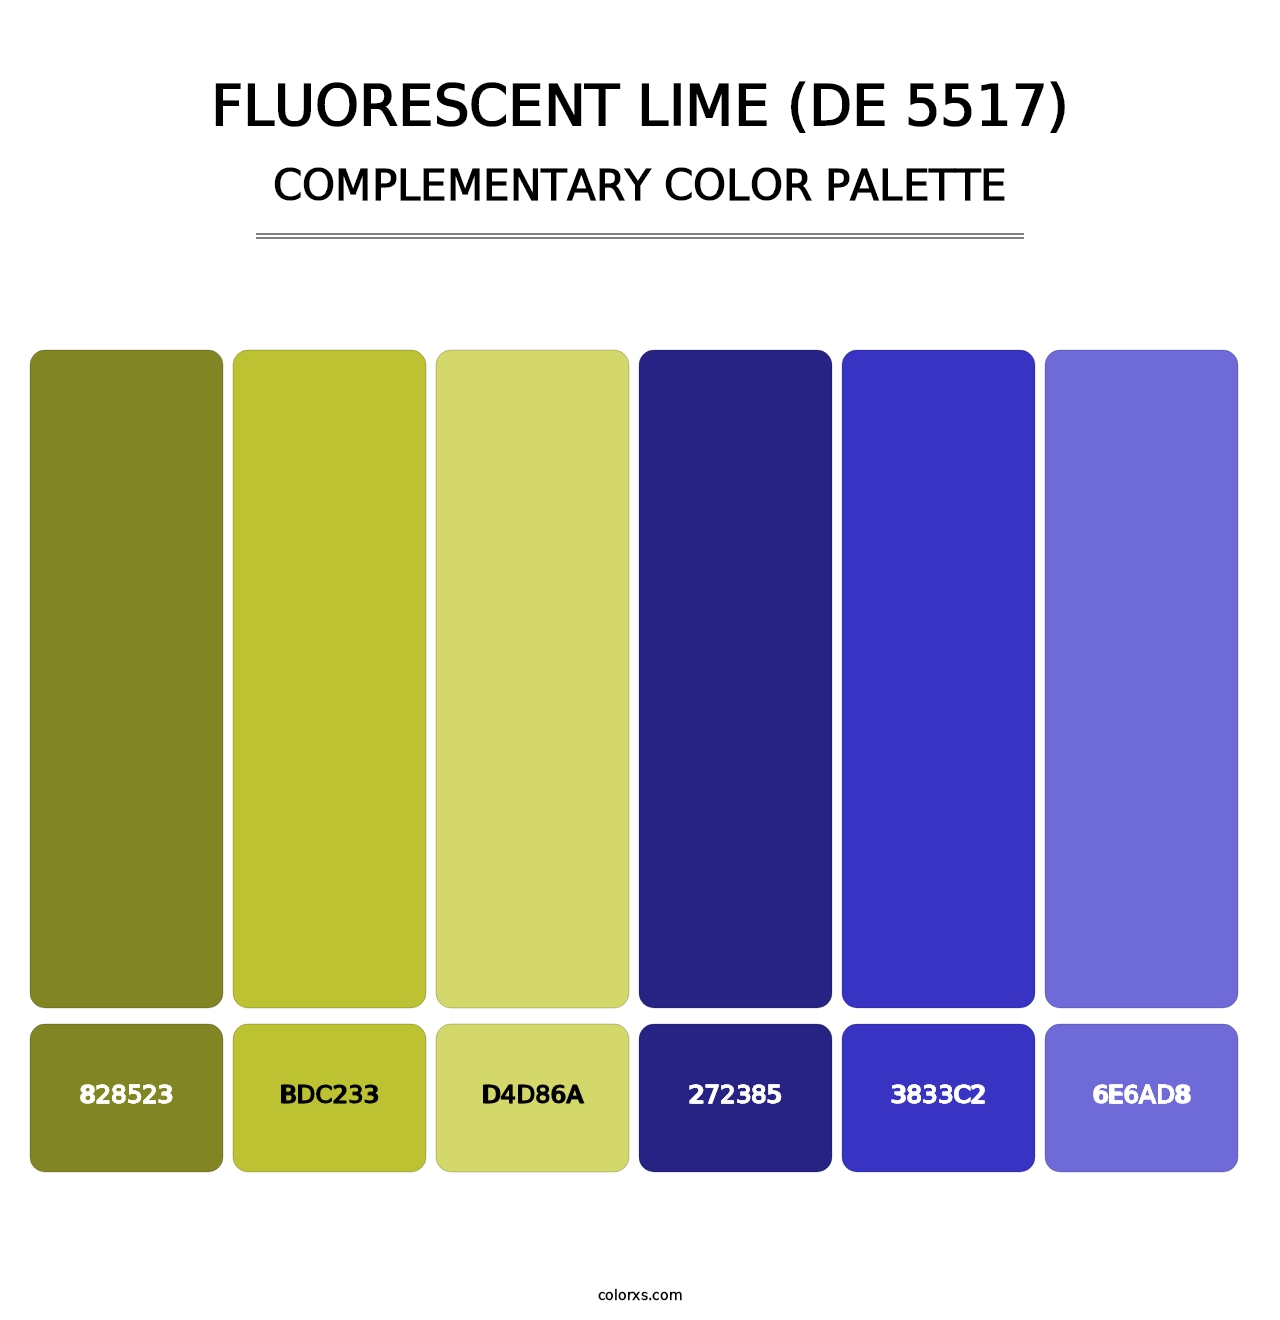 Fluorescent Lime (DE 5517) - Complementary Color Palette